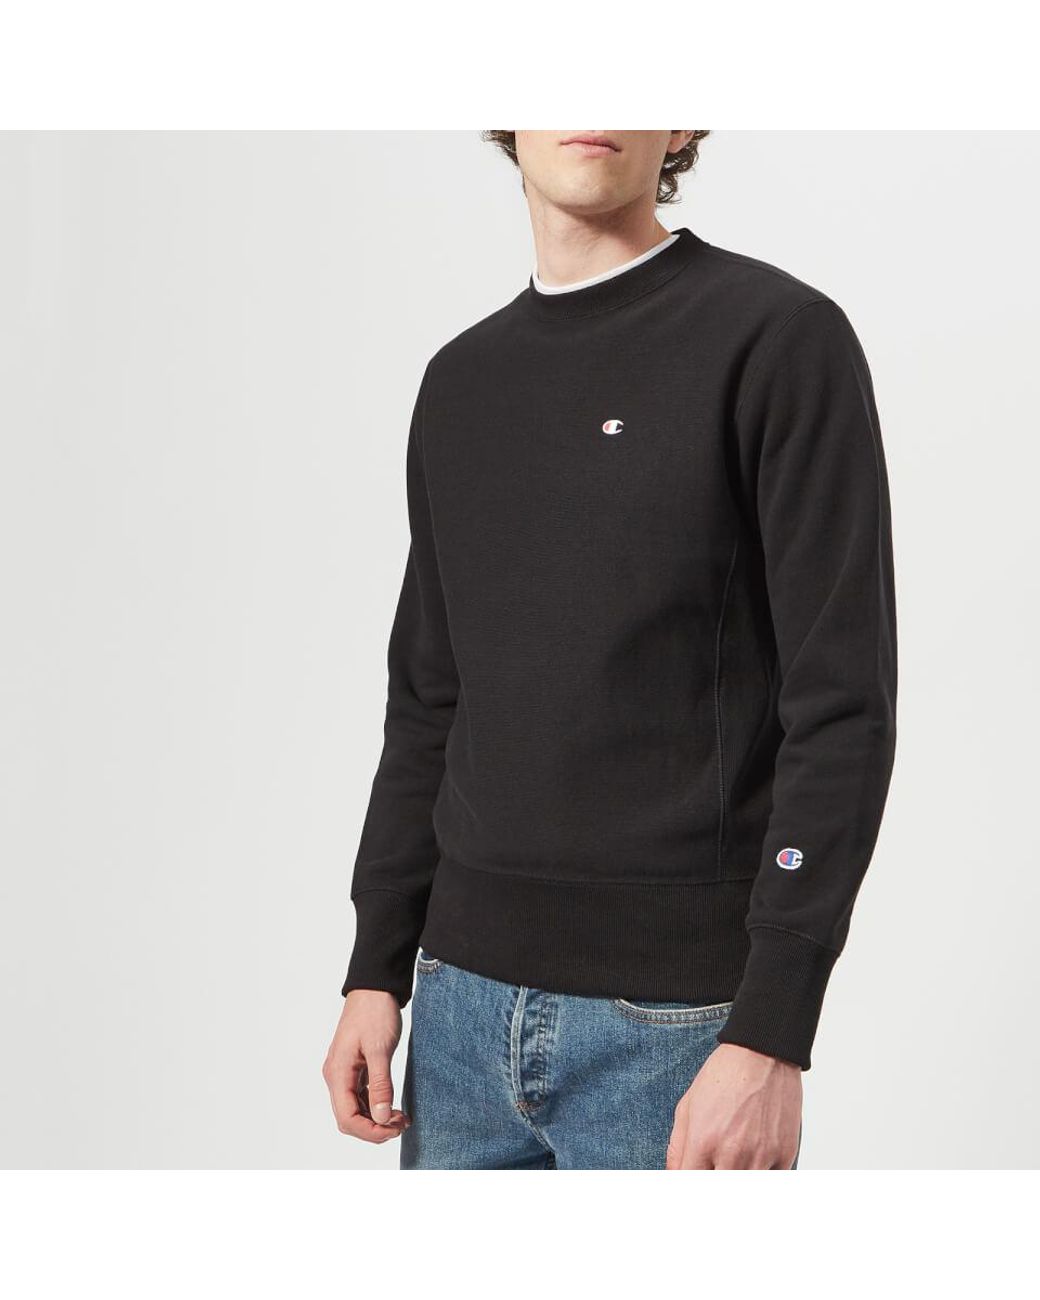 Champion Cotton Crew Neck Sweatshirt in Black for Men - Save 26% - Lyst